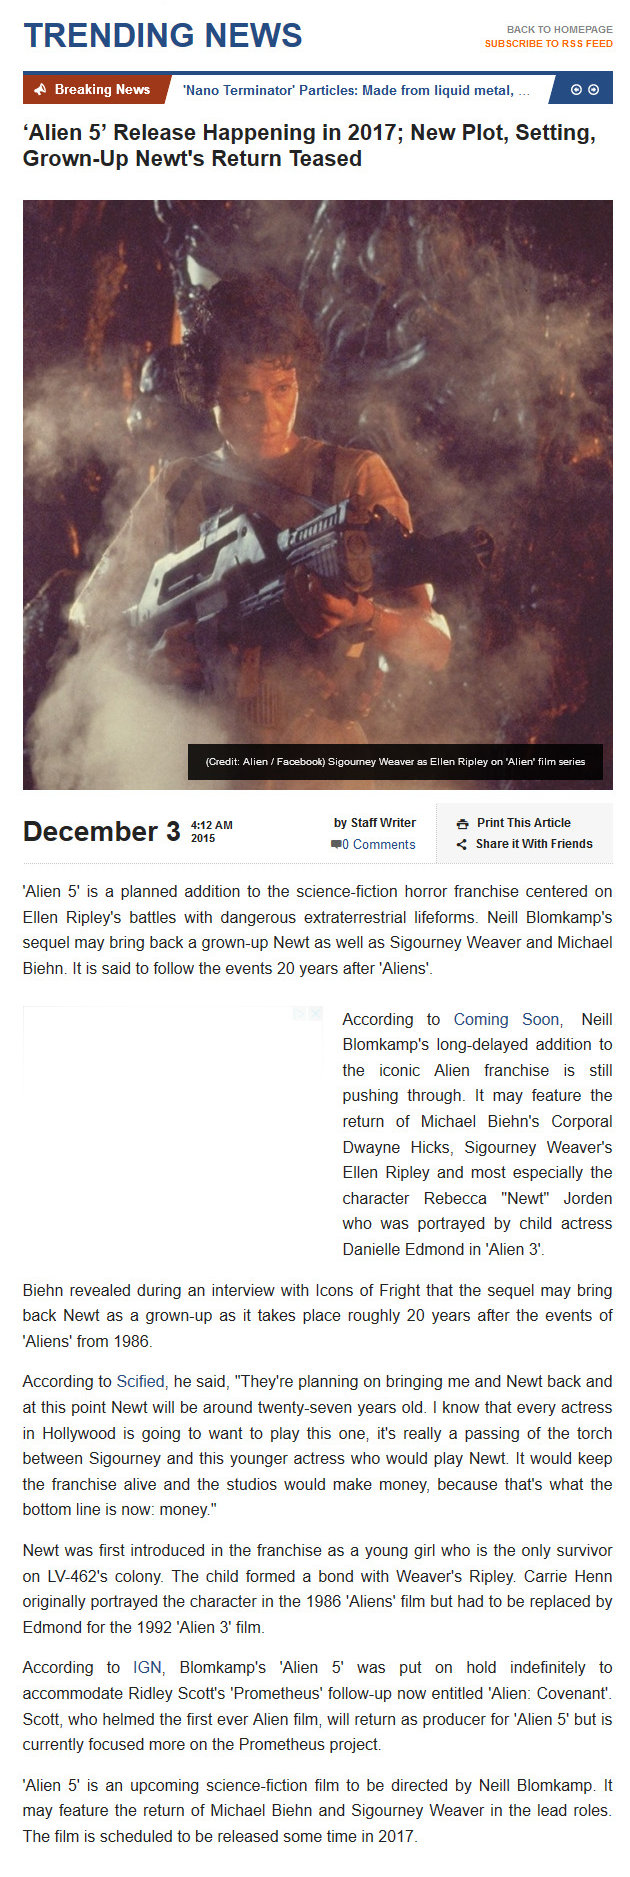 Alien 5 Release Happening in 2017 - New Plot Setting - Grown-Up Newt's Return Teased
3 Dec 2015
Trending News
Keywords: ;media_publicity;aliens_alien5